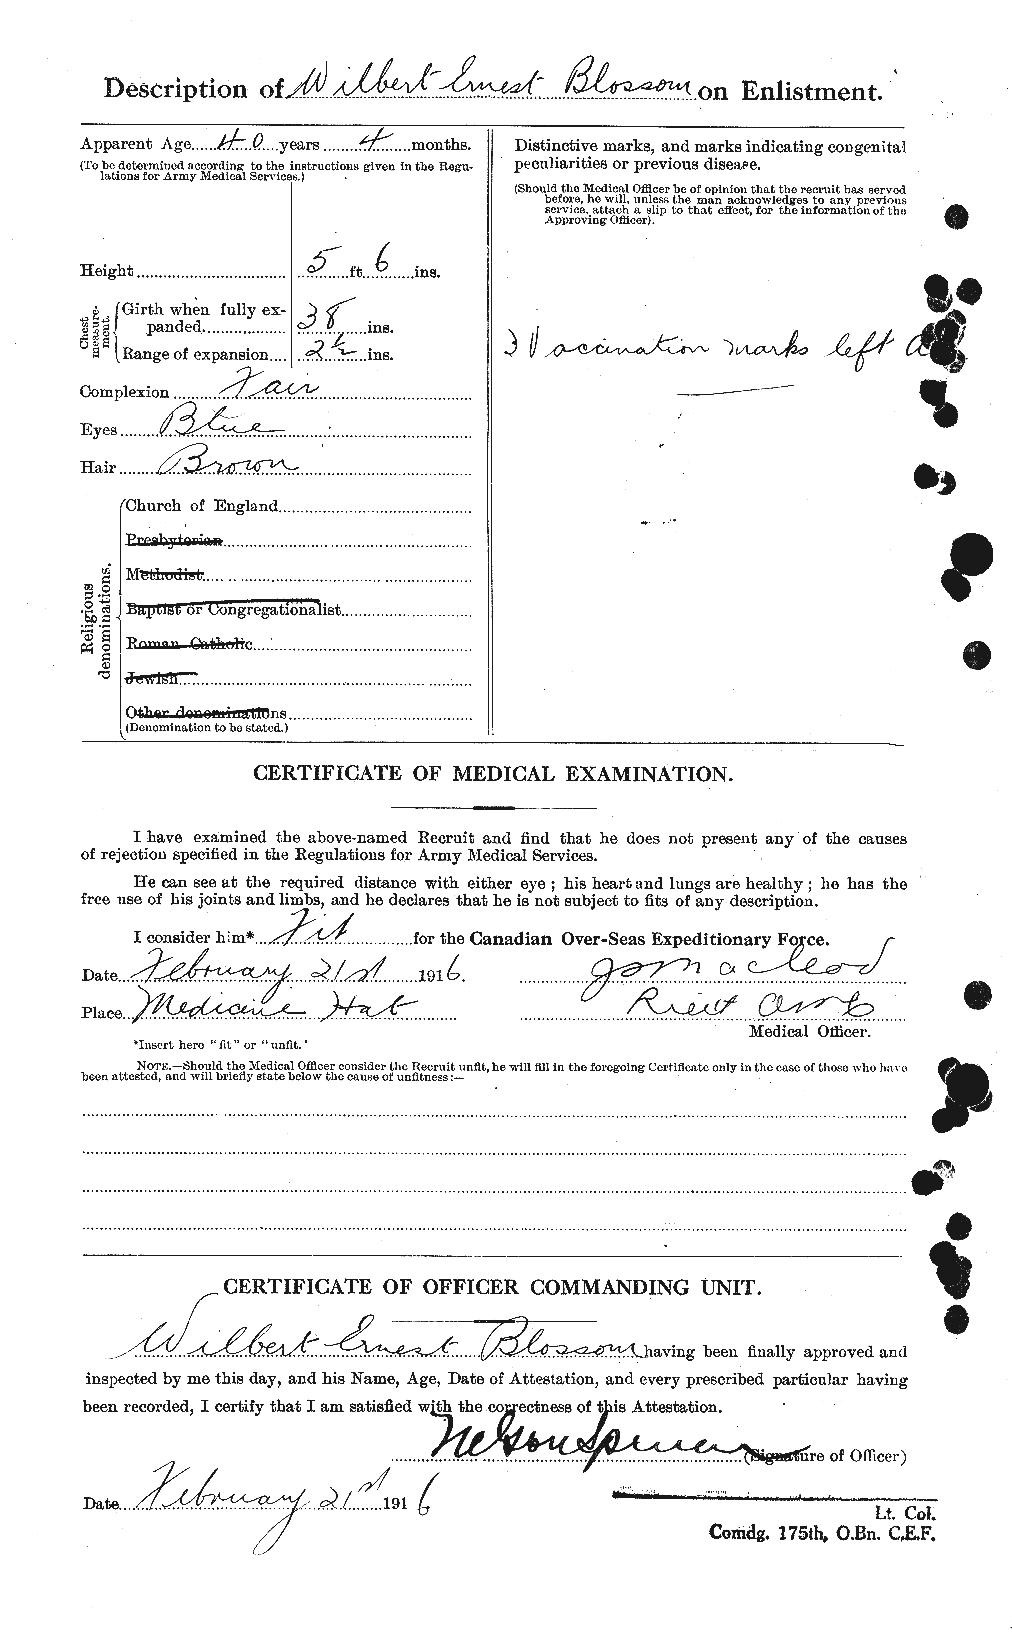 Dossiers du Personnel de la Première Guerre mondiale - CEC 247362b